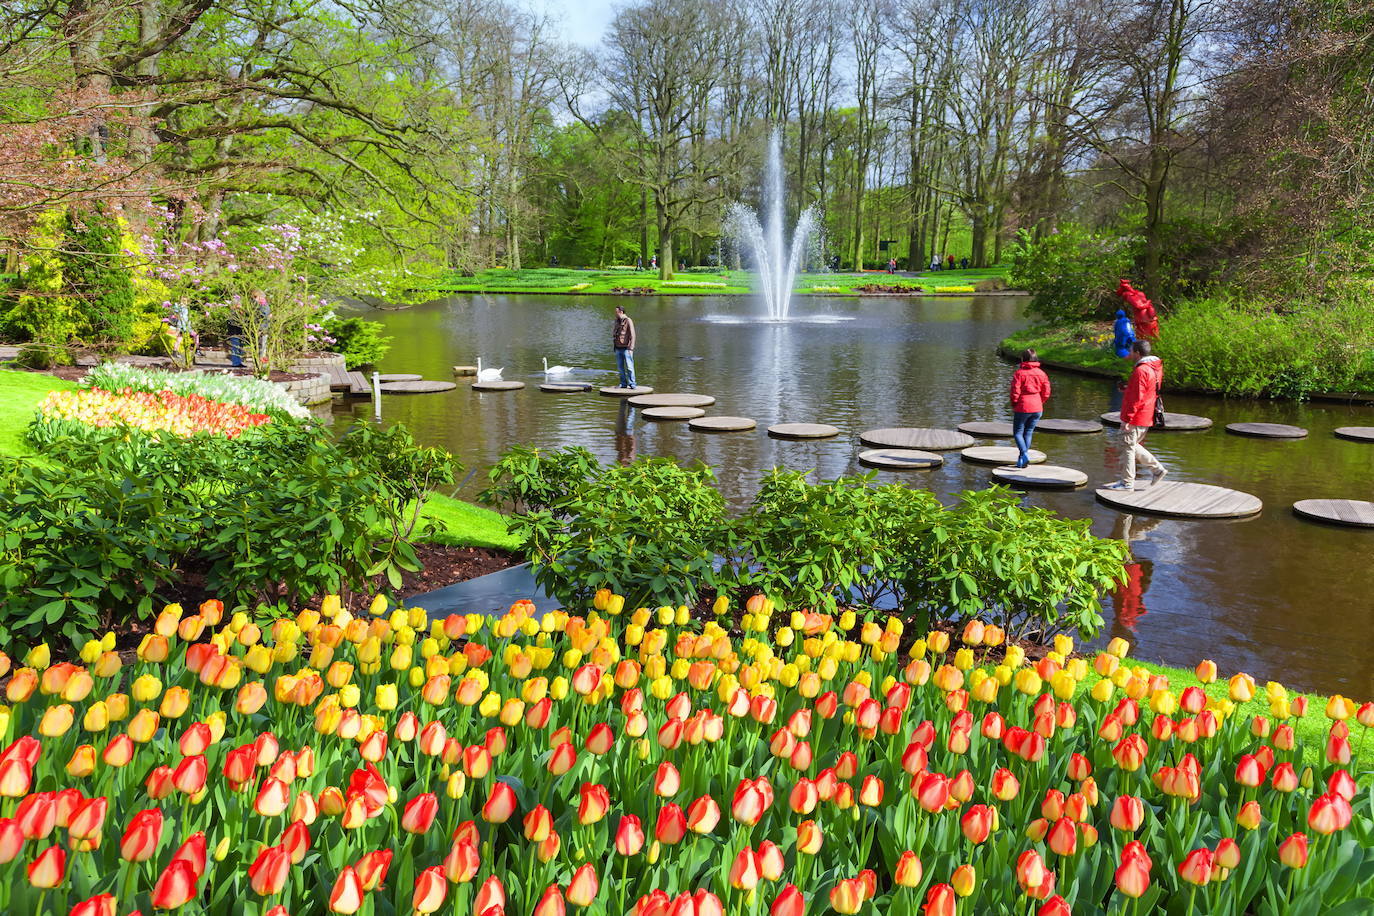 Más tulipanes, esta vez en el jardín de Keukenhof, en los Países Bajos